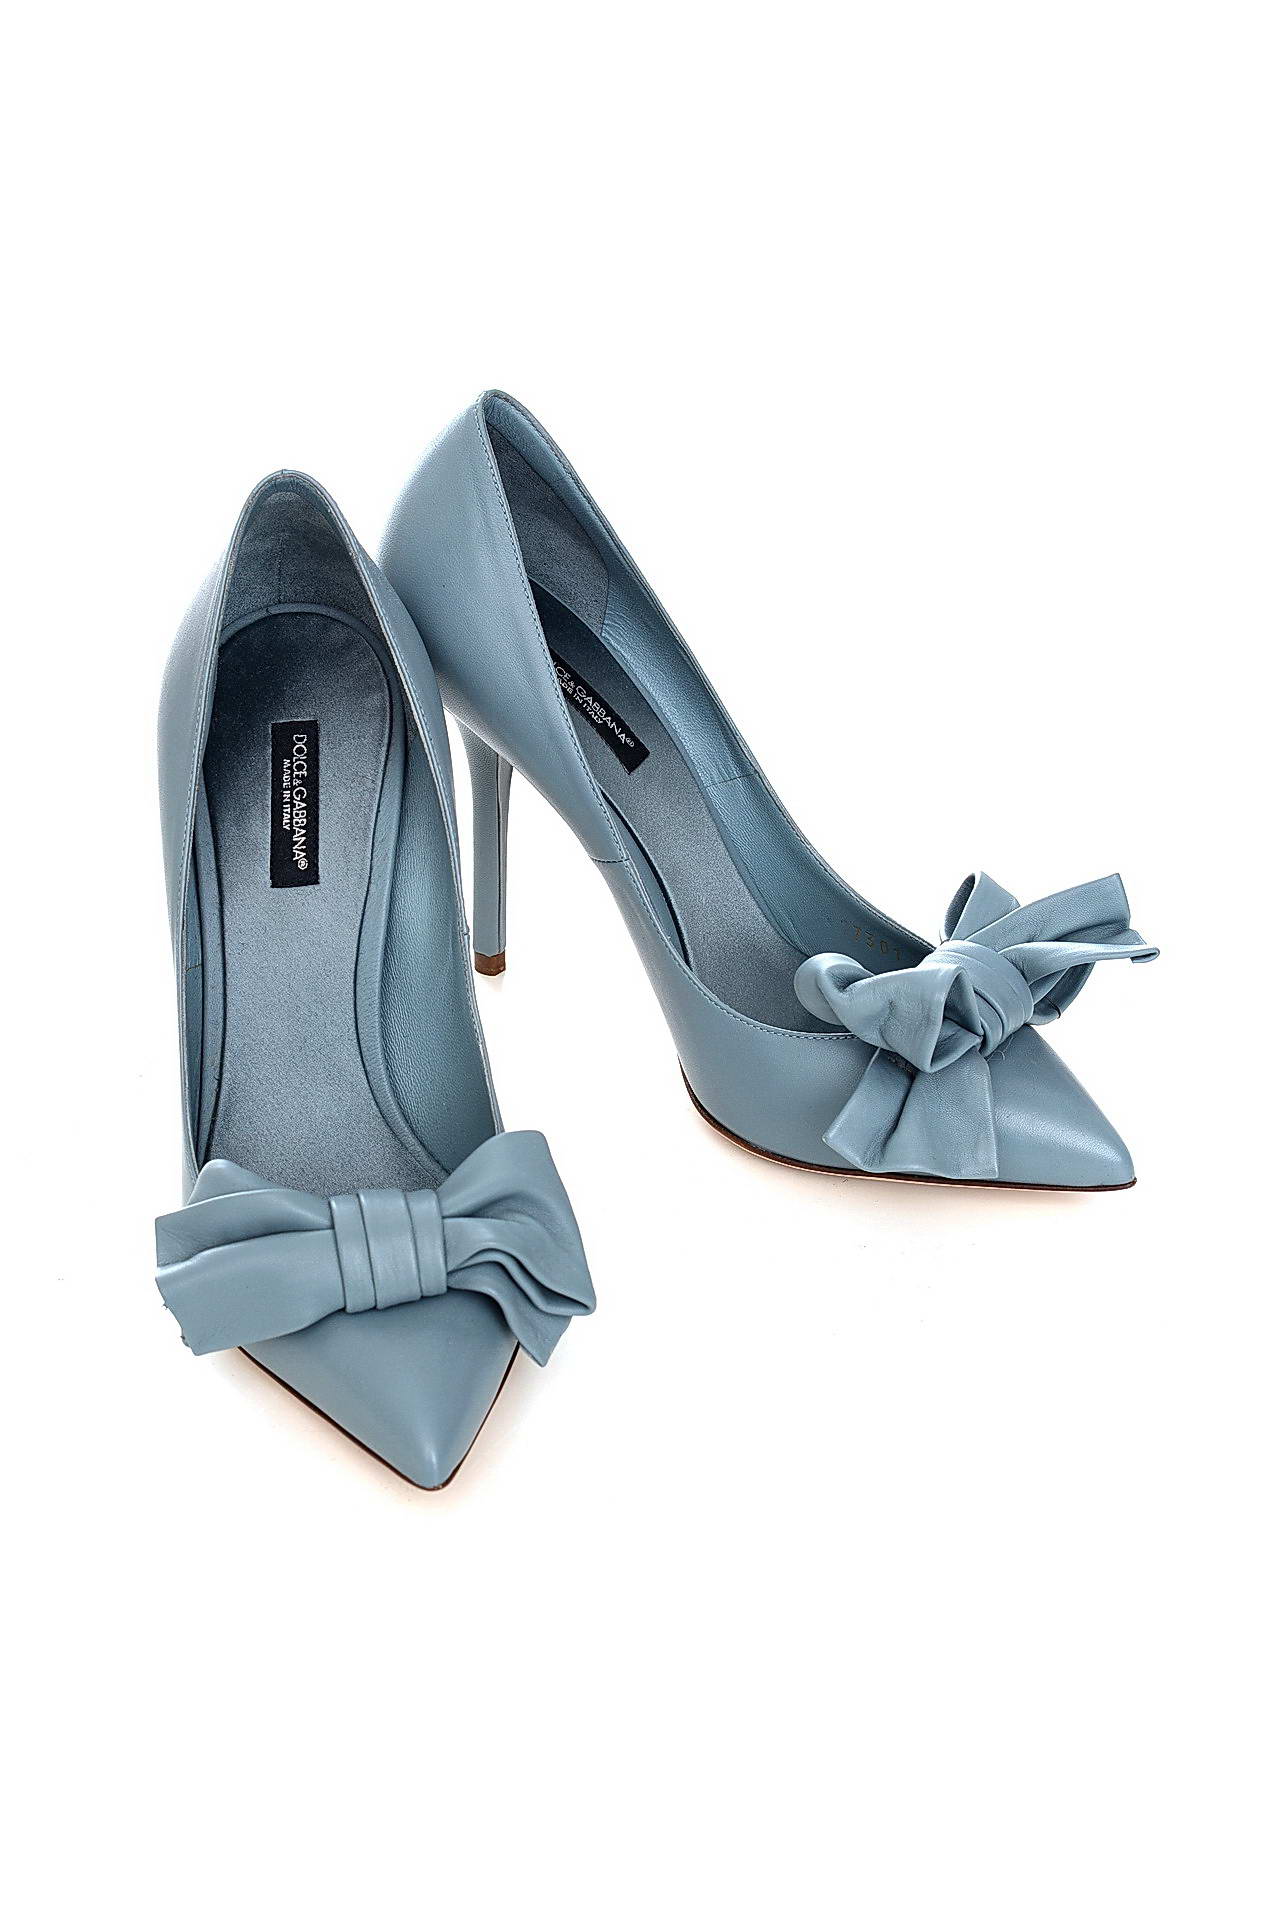 Обувь женская Туфли DOLCE & GABBANA (C17301A1419/14.2). Купить за 19750 руб.